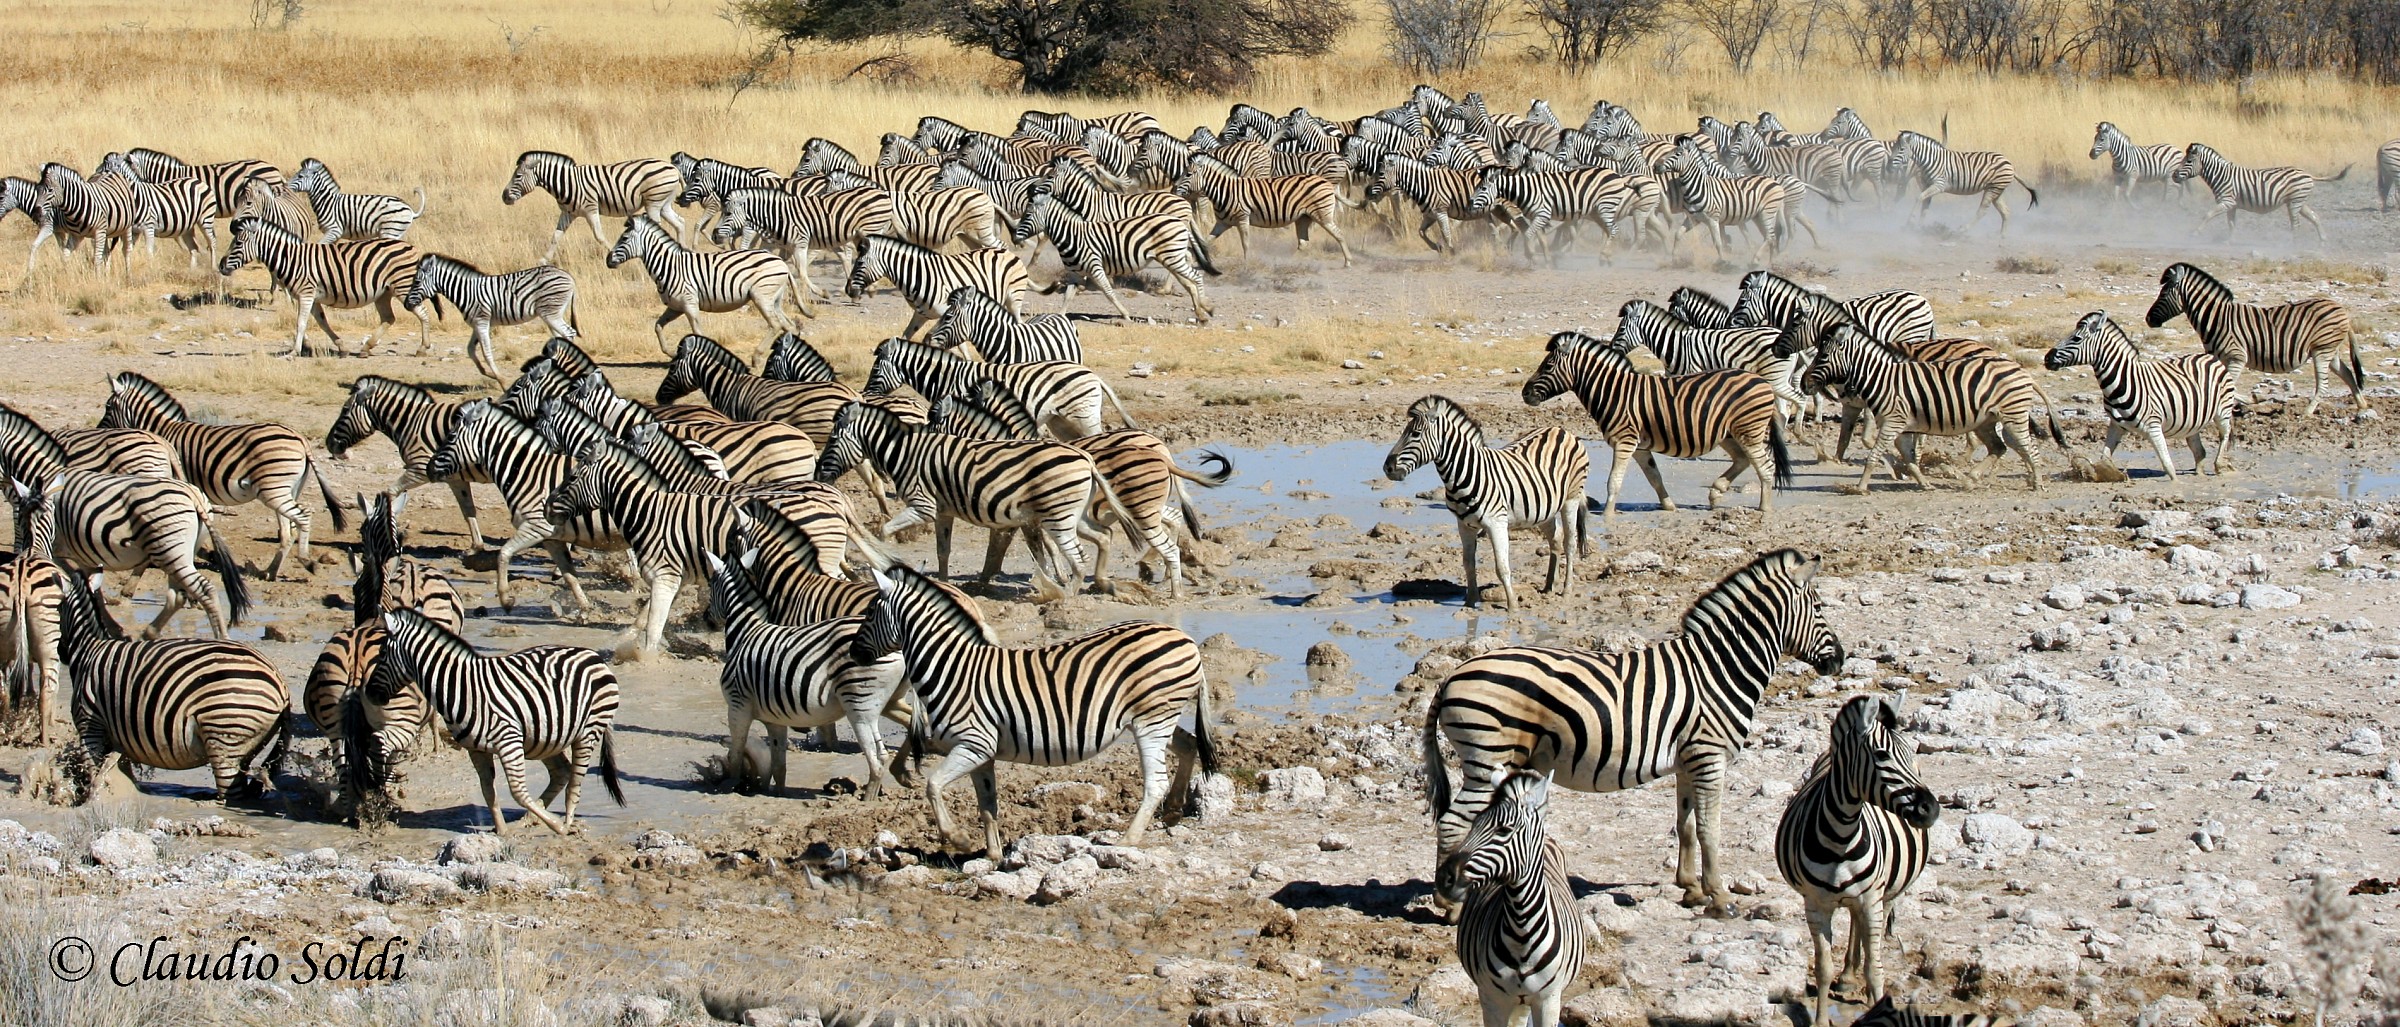 Zebras on the run...